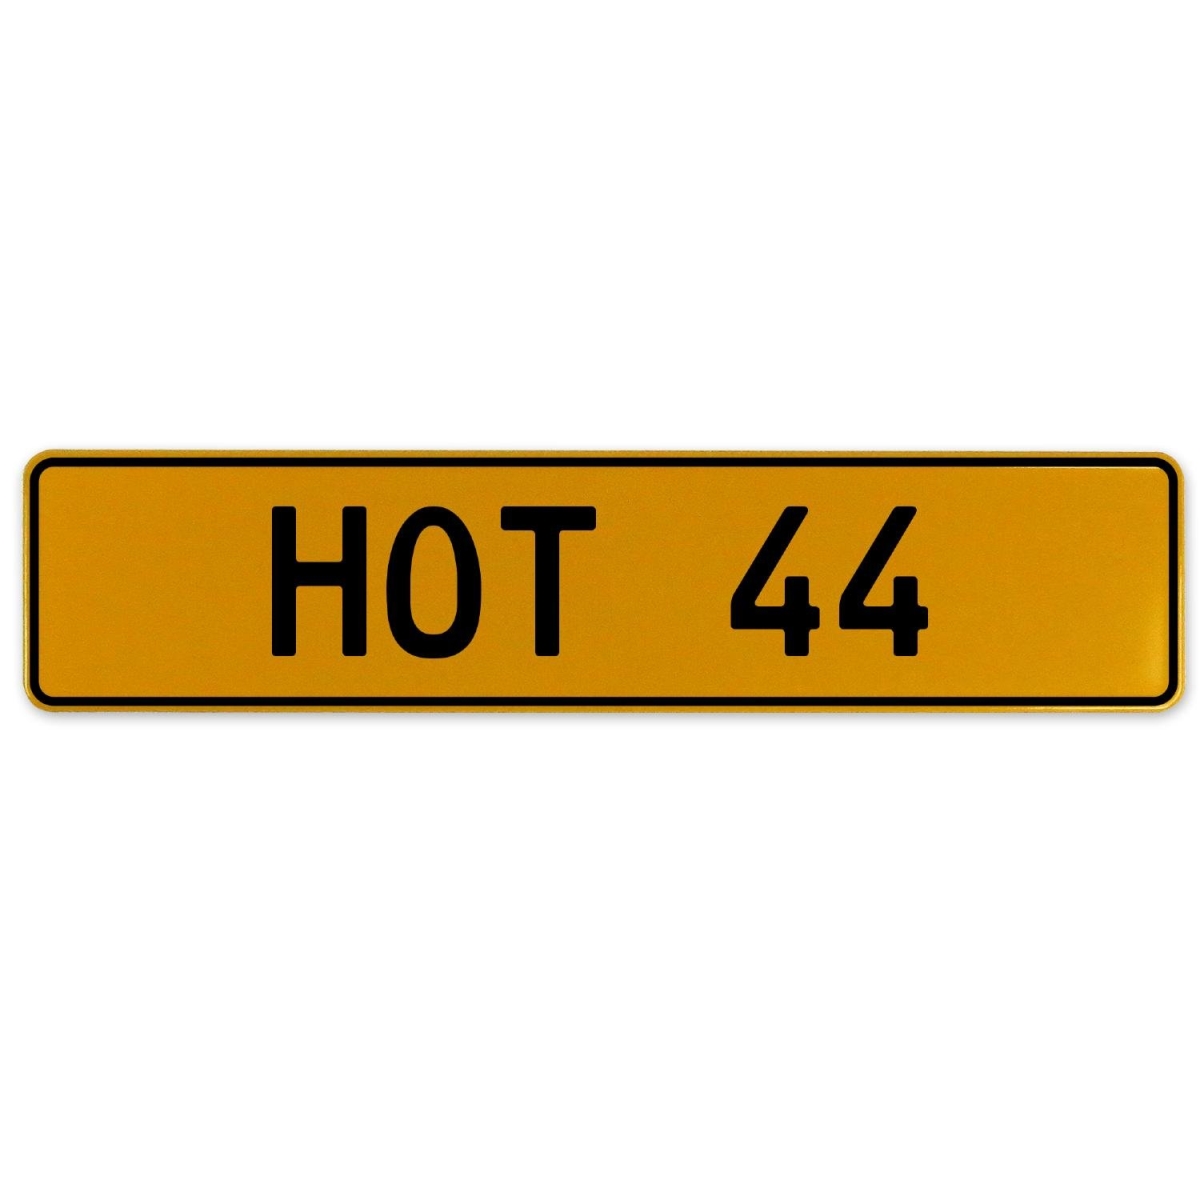 558700 Hot 44 - Yellow Aluminum Street Sign Mancave Euro Plate Name Door Sign Wall